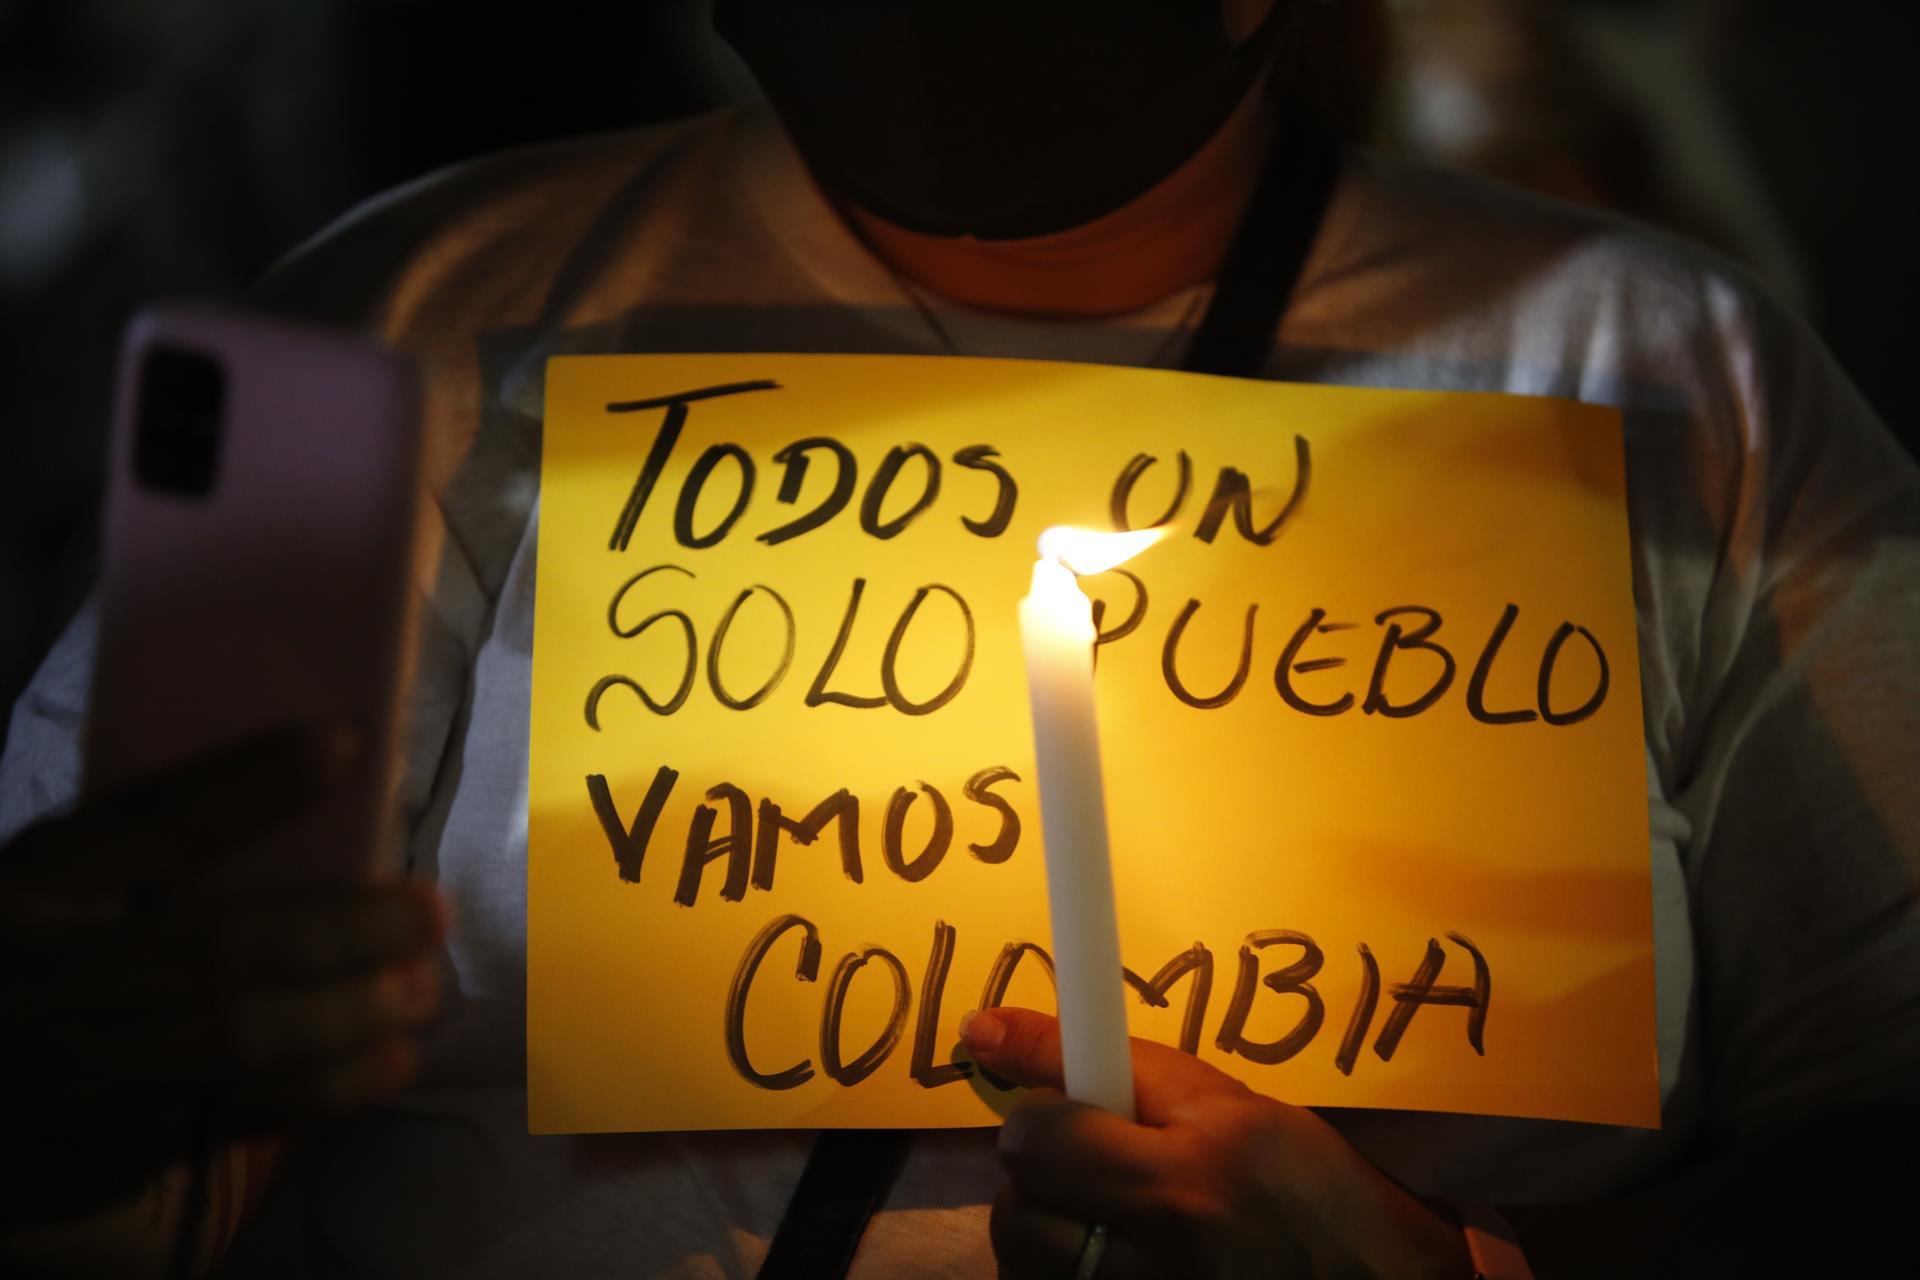 Decenas de colombianos residentes en Panamá se congregaron la noche de este miércoles en un parque de la capital panameña donde encendieron velas para pedir por la paz y la unidad, sin importar bandos, de Colombia, sumido en protestas que han dejado al menos 24 muertos. EFE/ Bienvenido Velasco